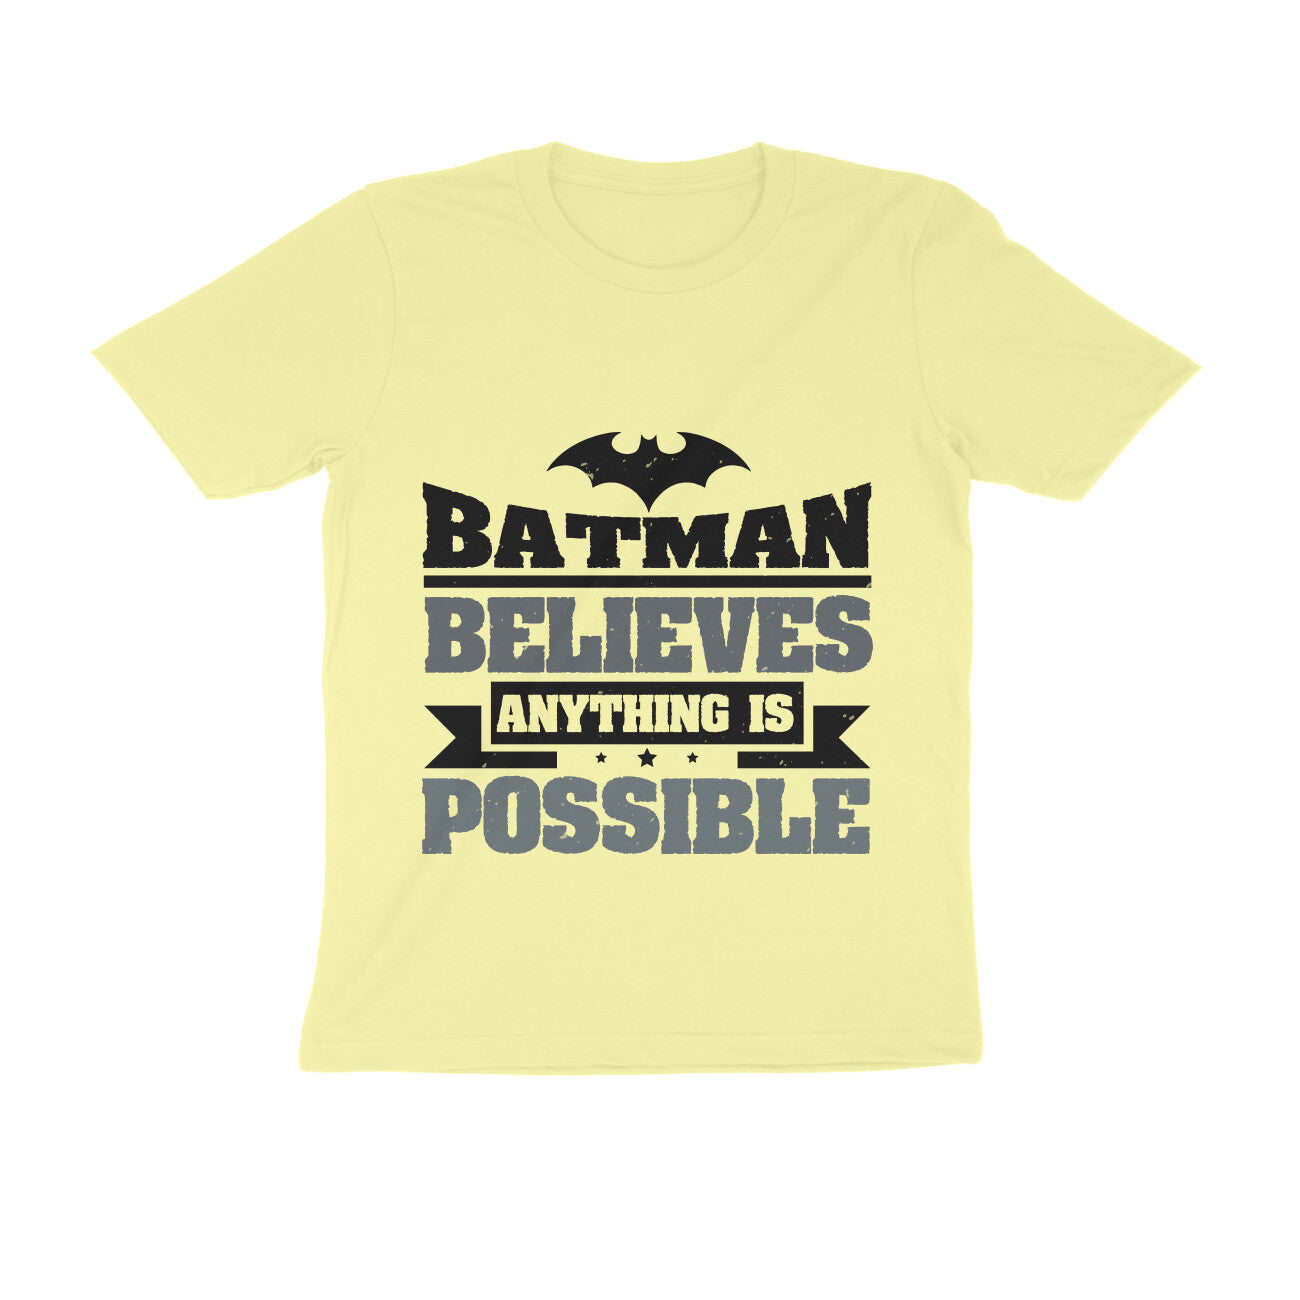 TNH - Men's Round Neck Tshirt - Batman - Believes